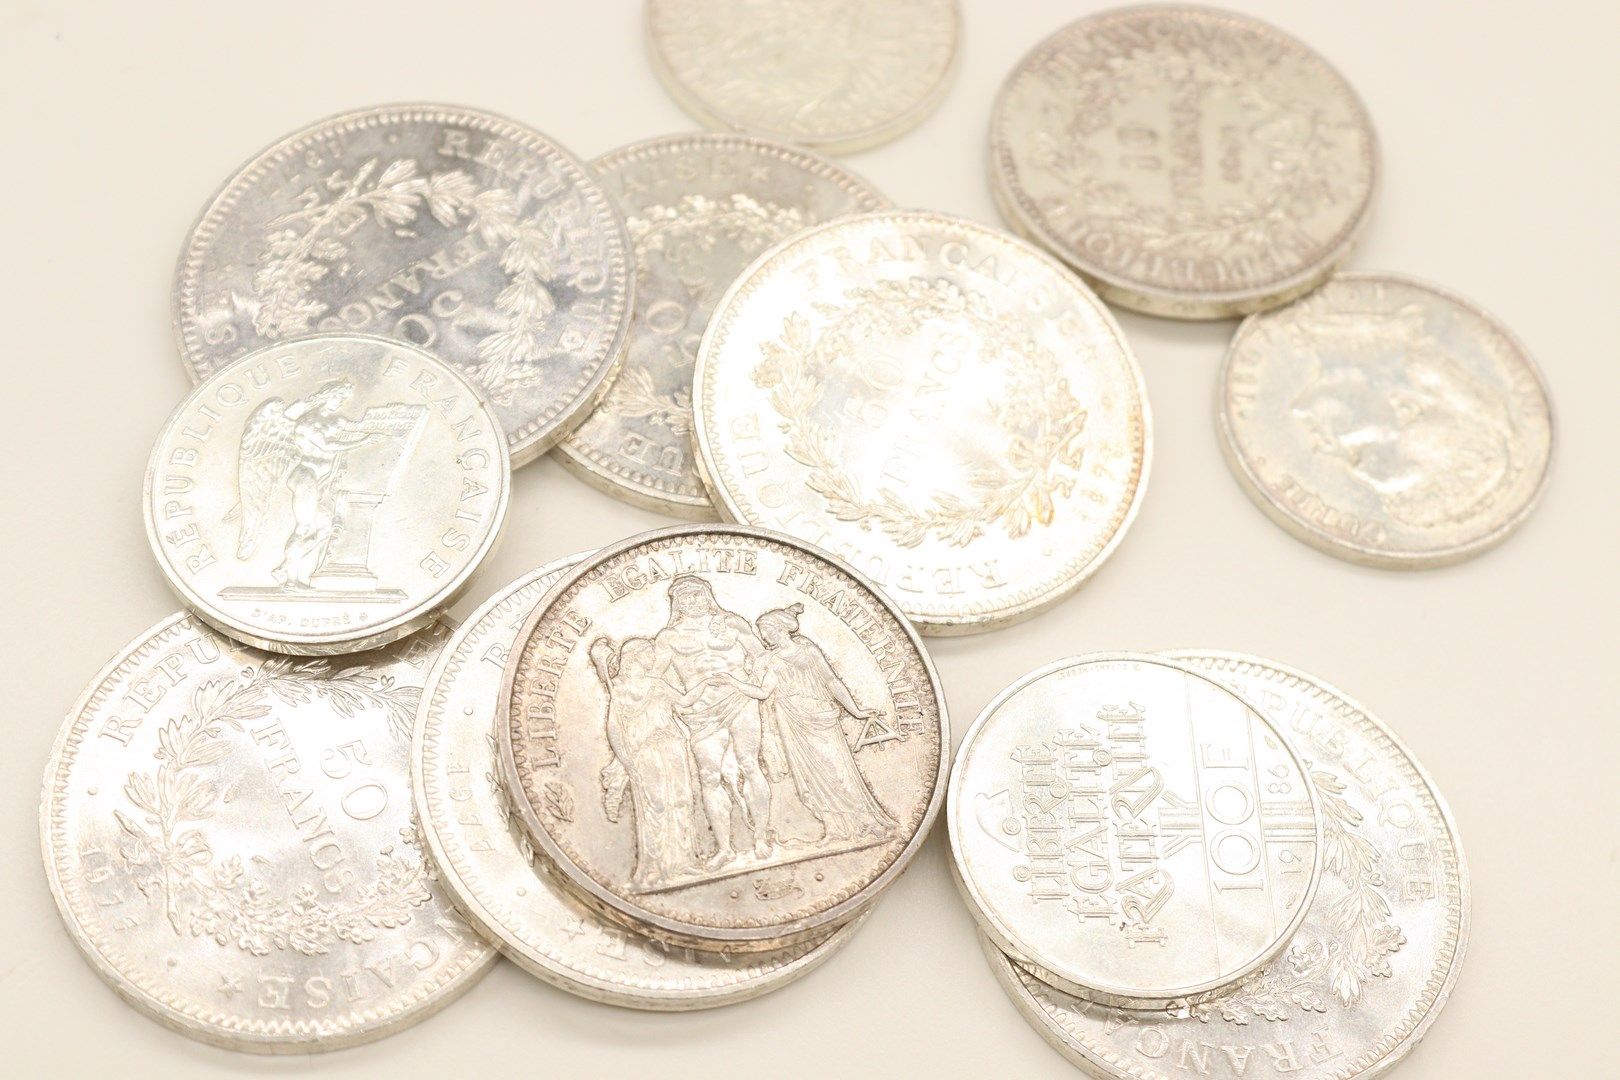 Null 一批银币包括:

- 四枚100法郎硬币(2x1984; 1986; 1989)

- 六枚50法郎海格力斯硬币(5x1977; 1978)

- 两&hellip;